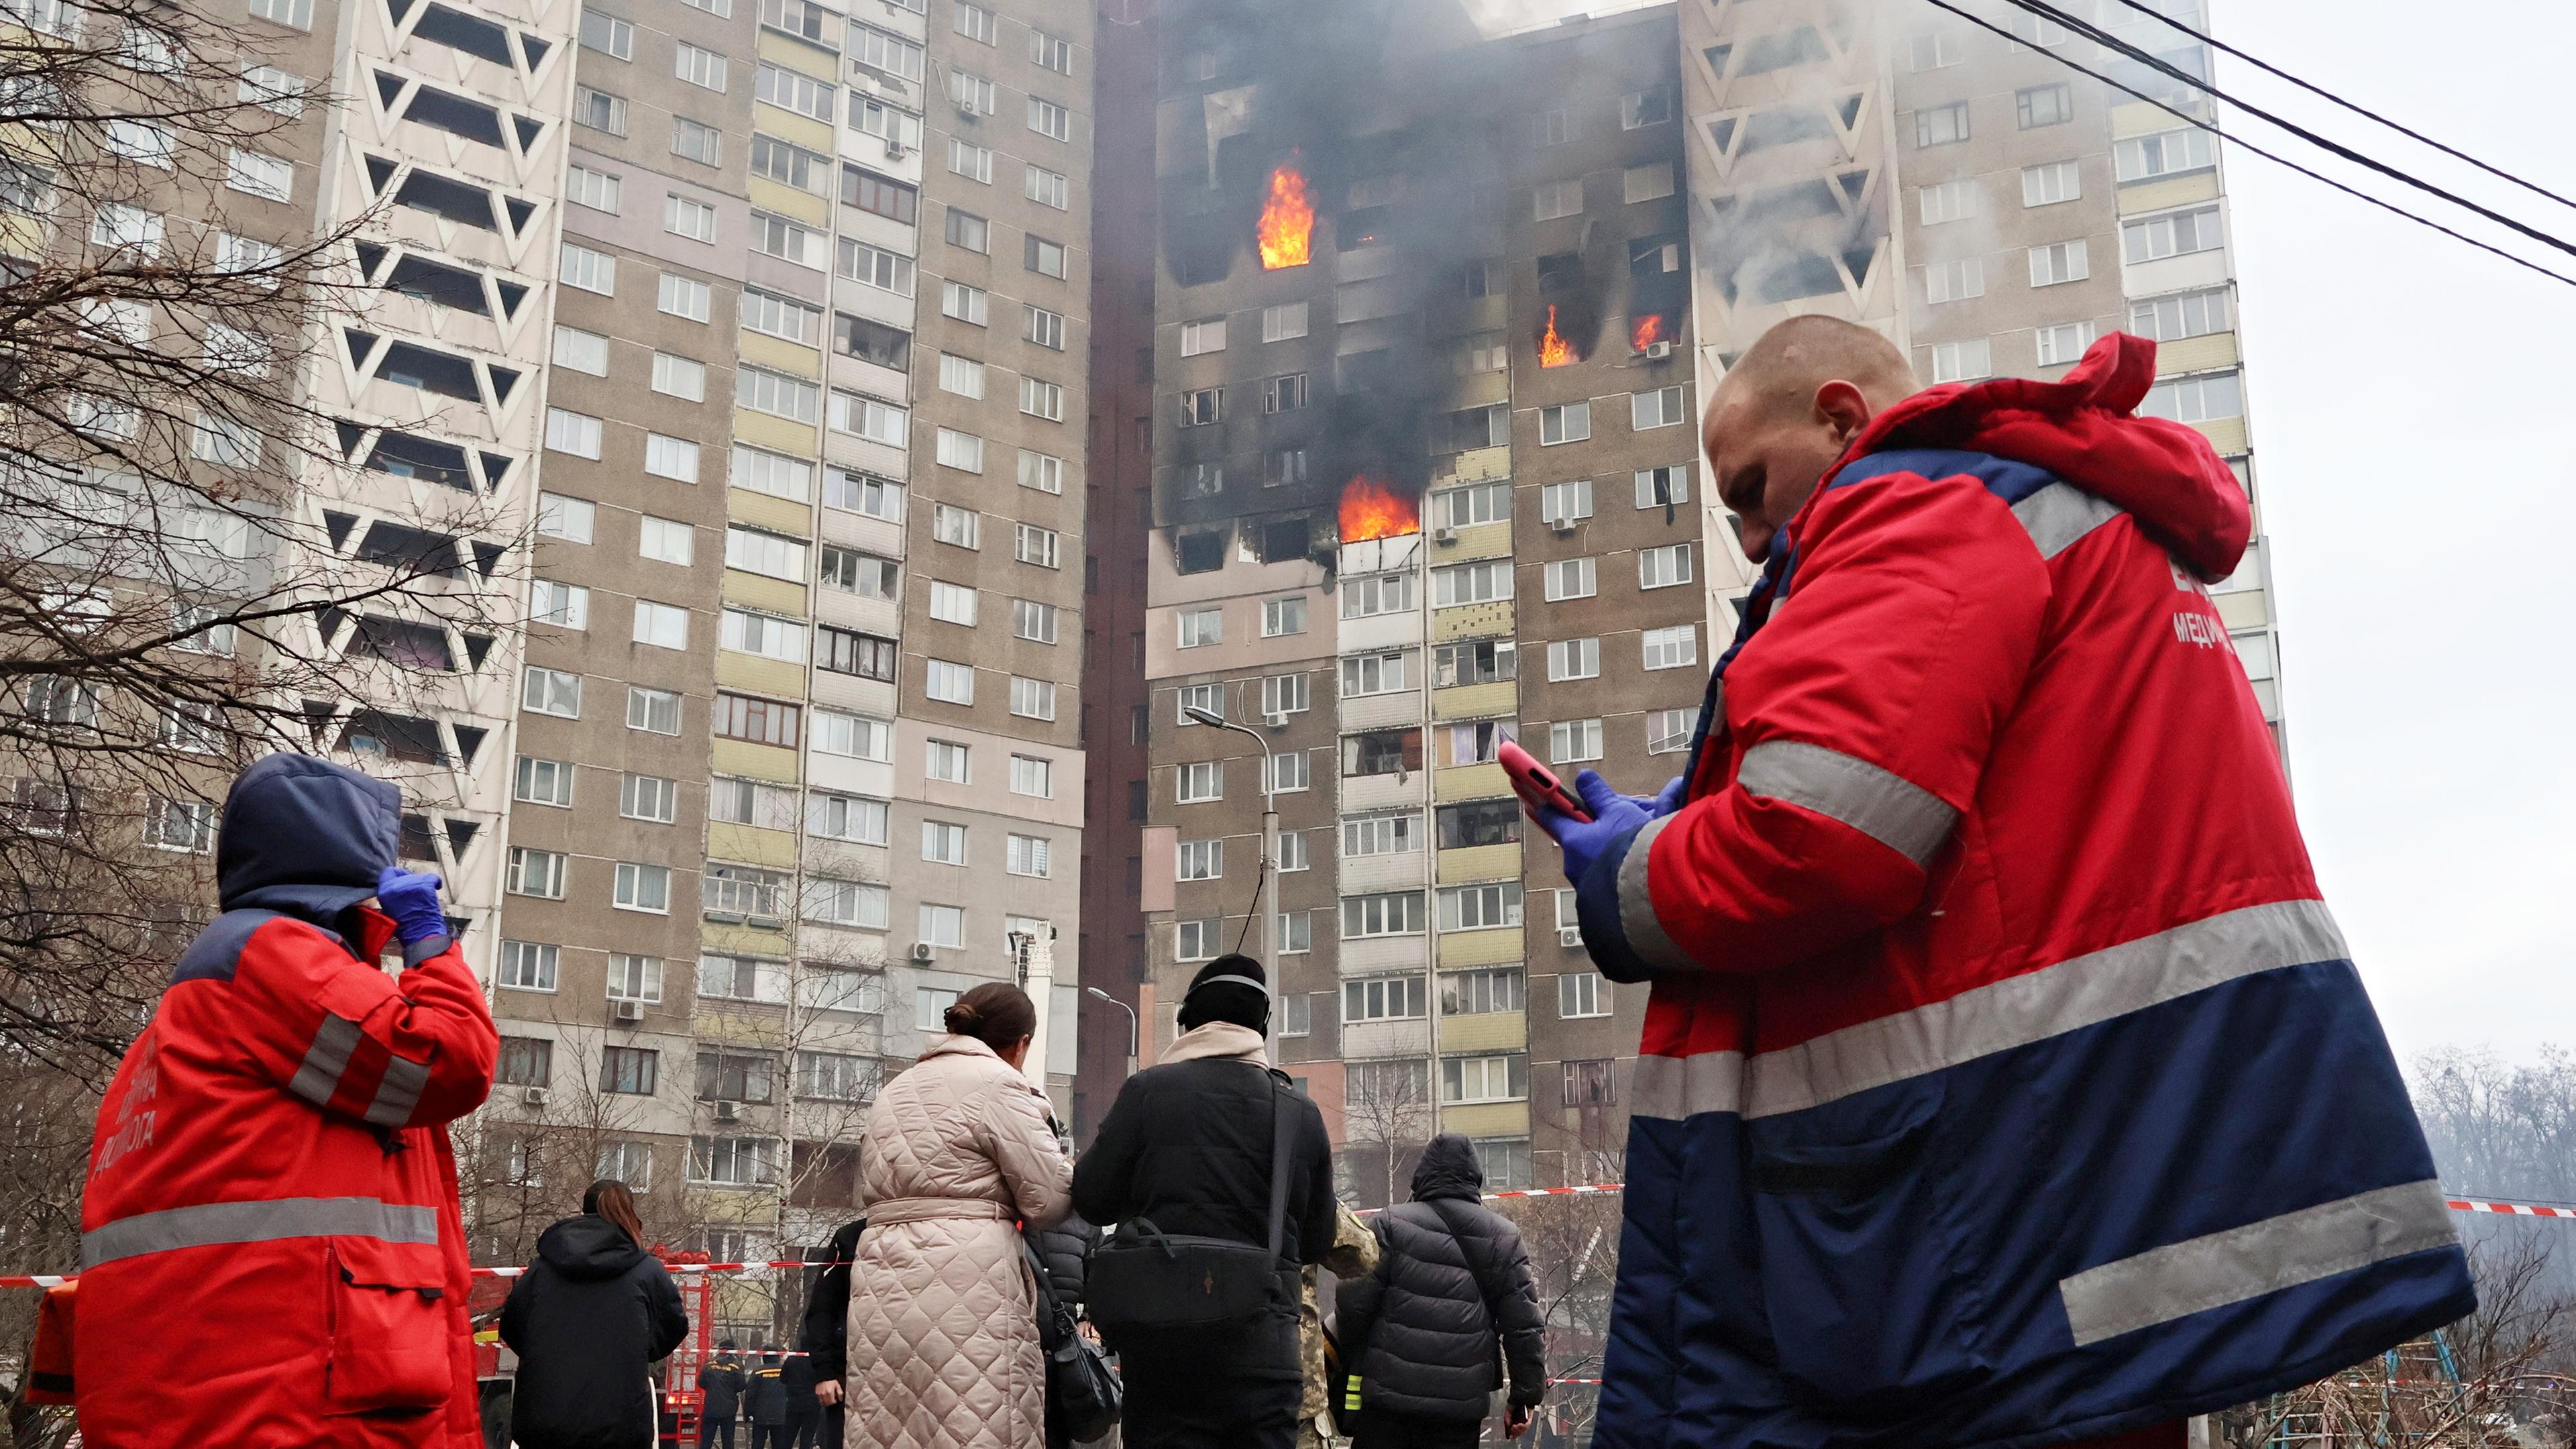 Rettungskräfte und Zivilisten stehen vor einem brennenden Wohngebäude, dass von russischen Marschflugkörpern getroffen wurde.